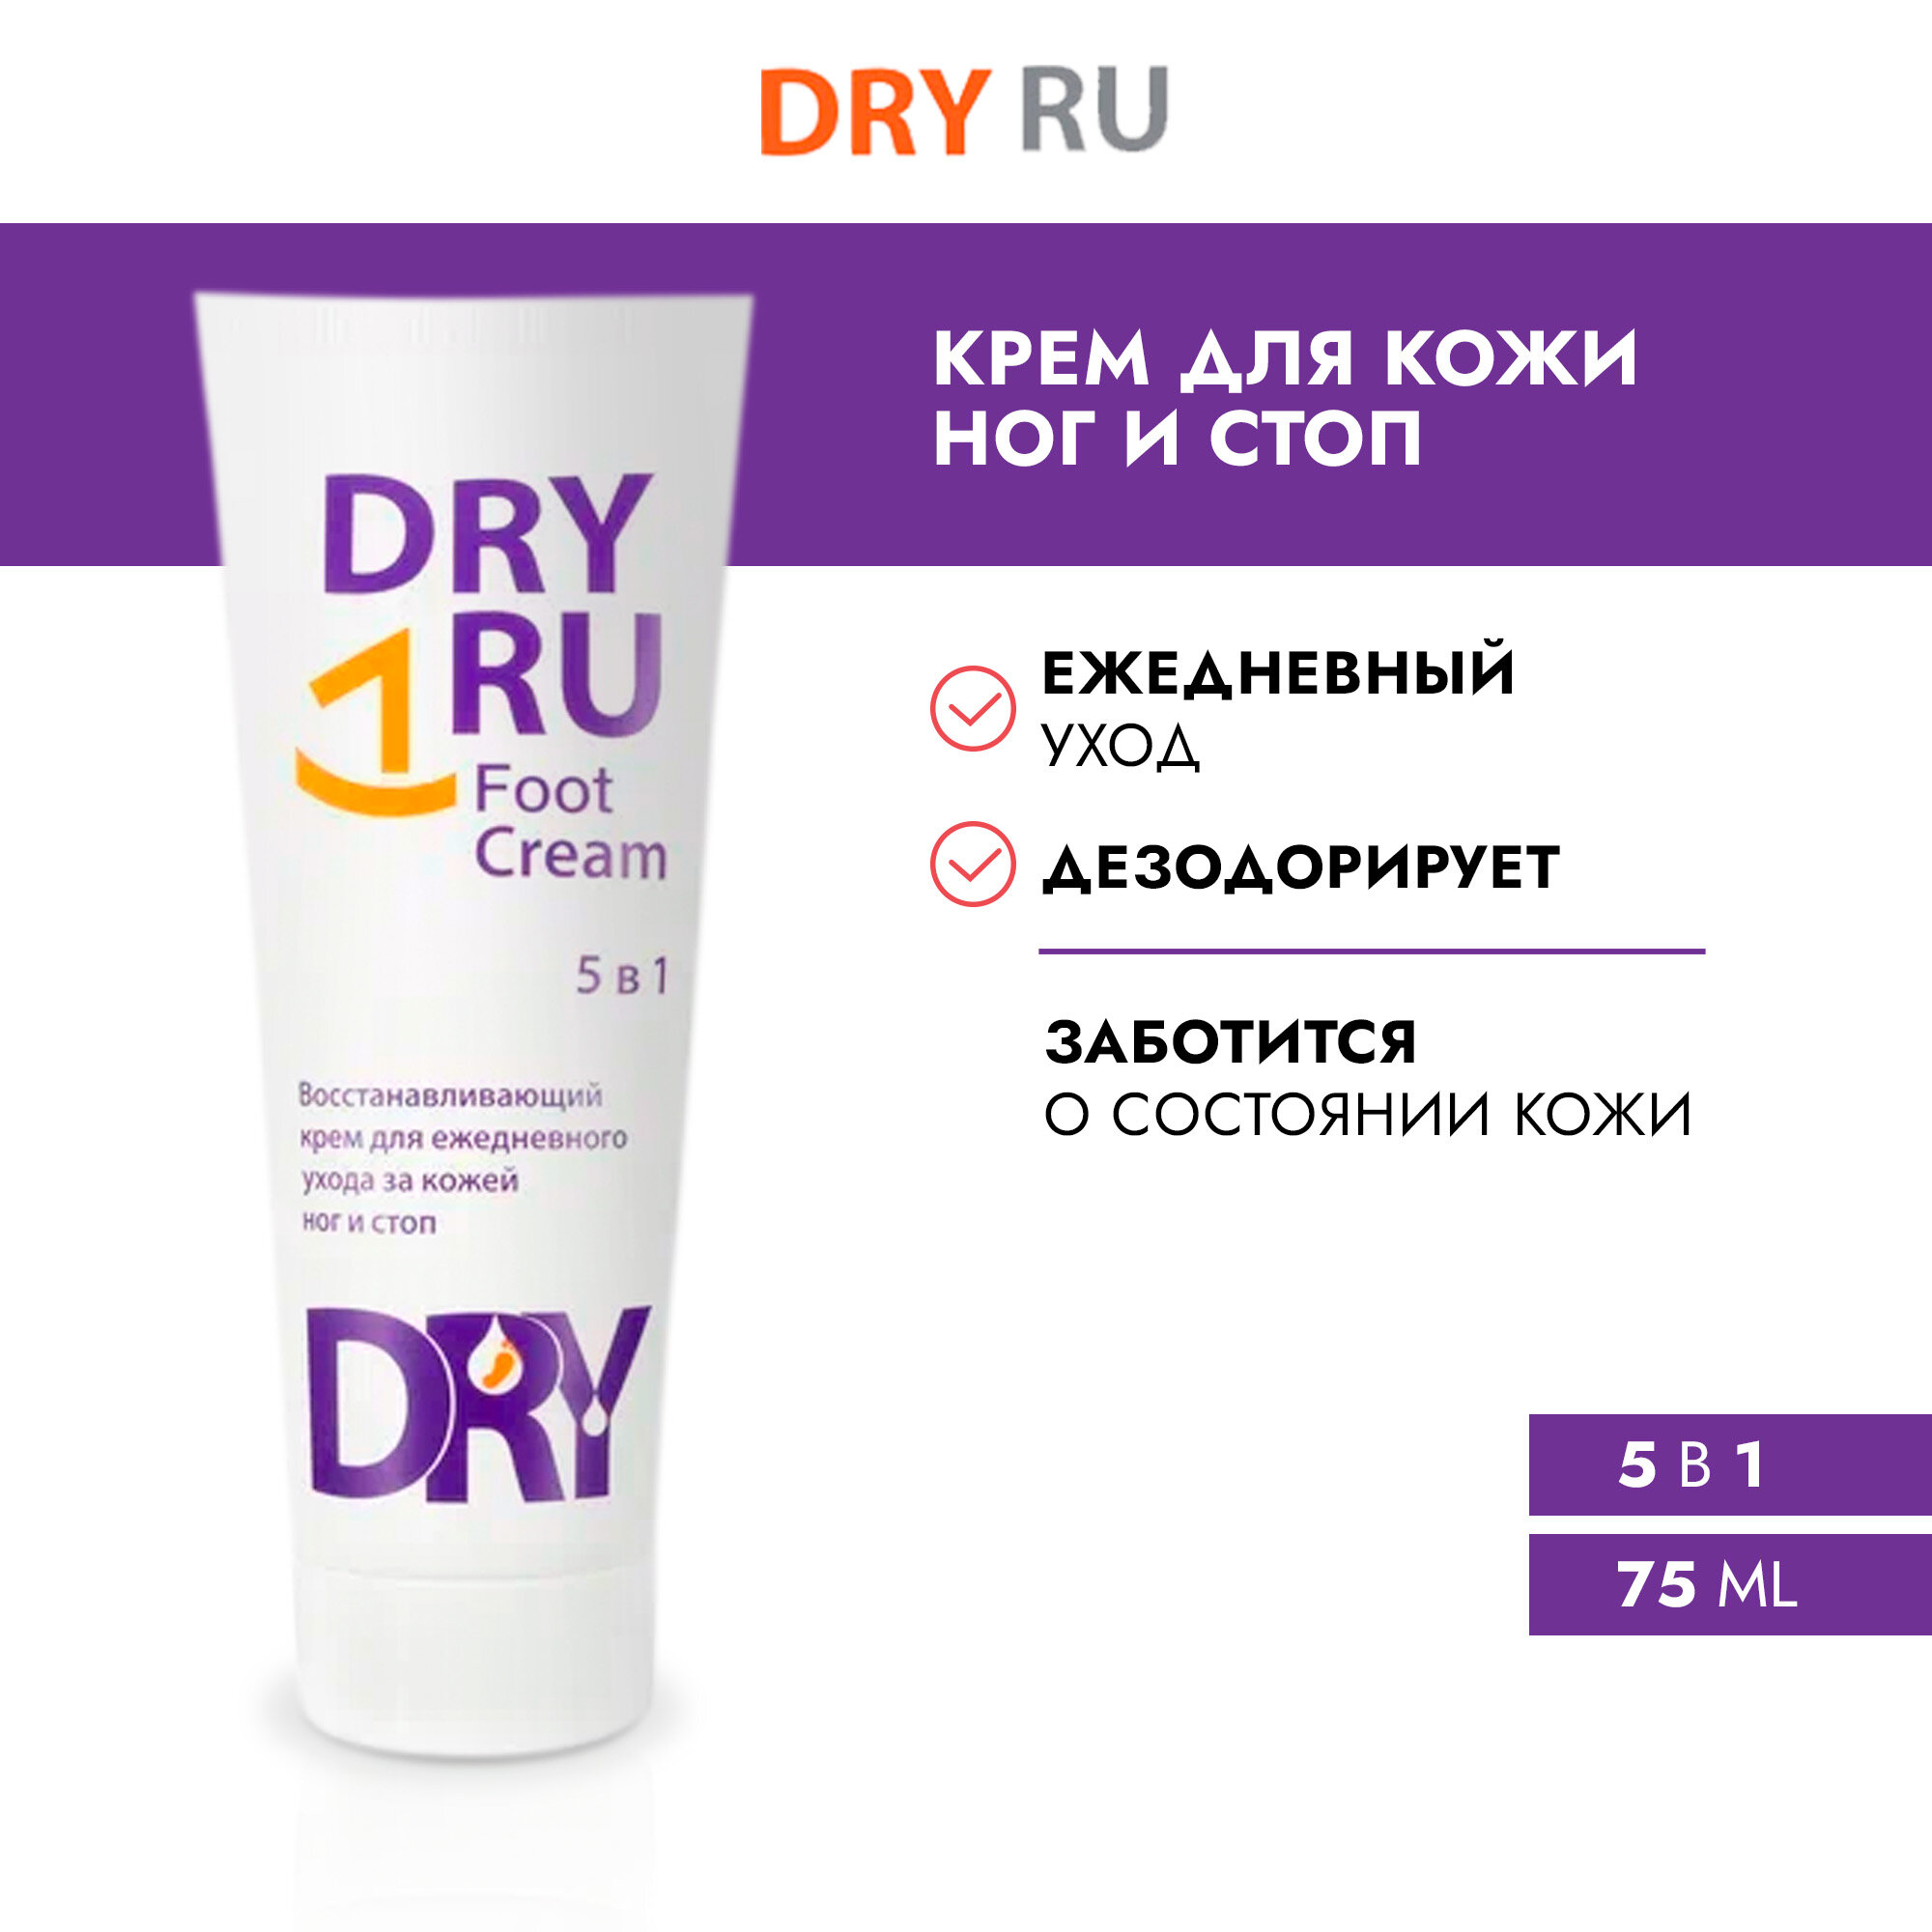 DRY RU / драй РУ Фут Крем 5в1 для ухода за кожей ног / крем-дезодорант от пота и запаха Dry RU Foot Cream